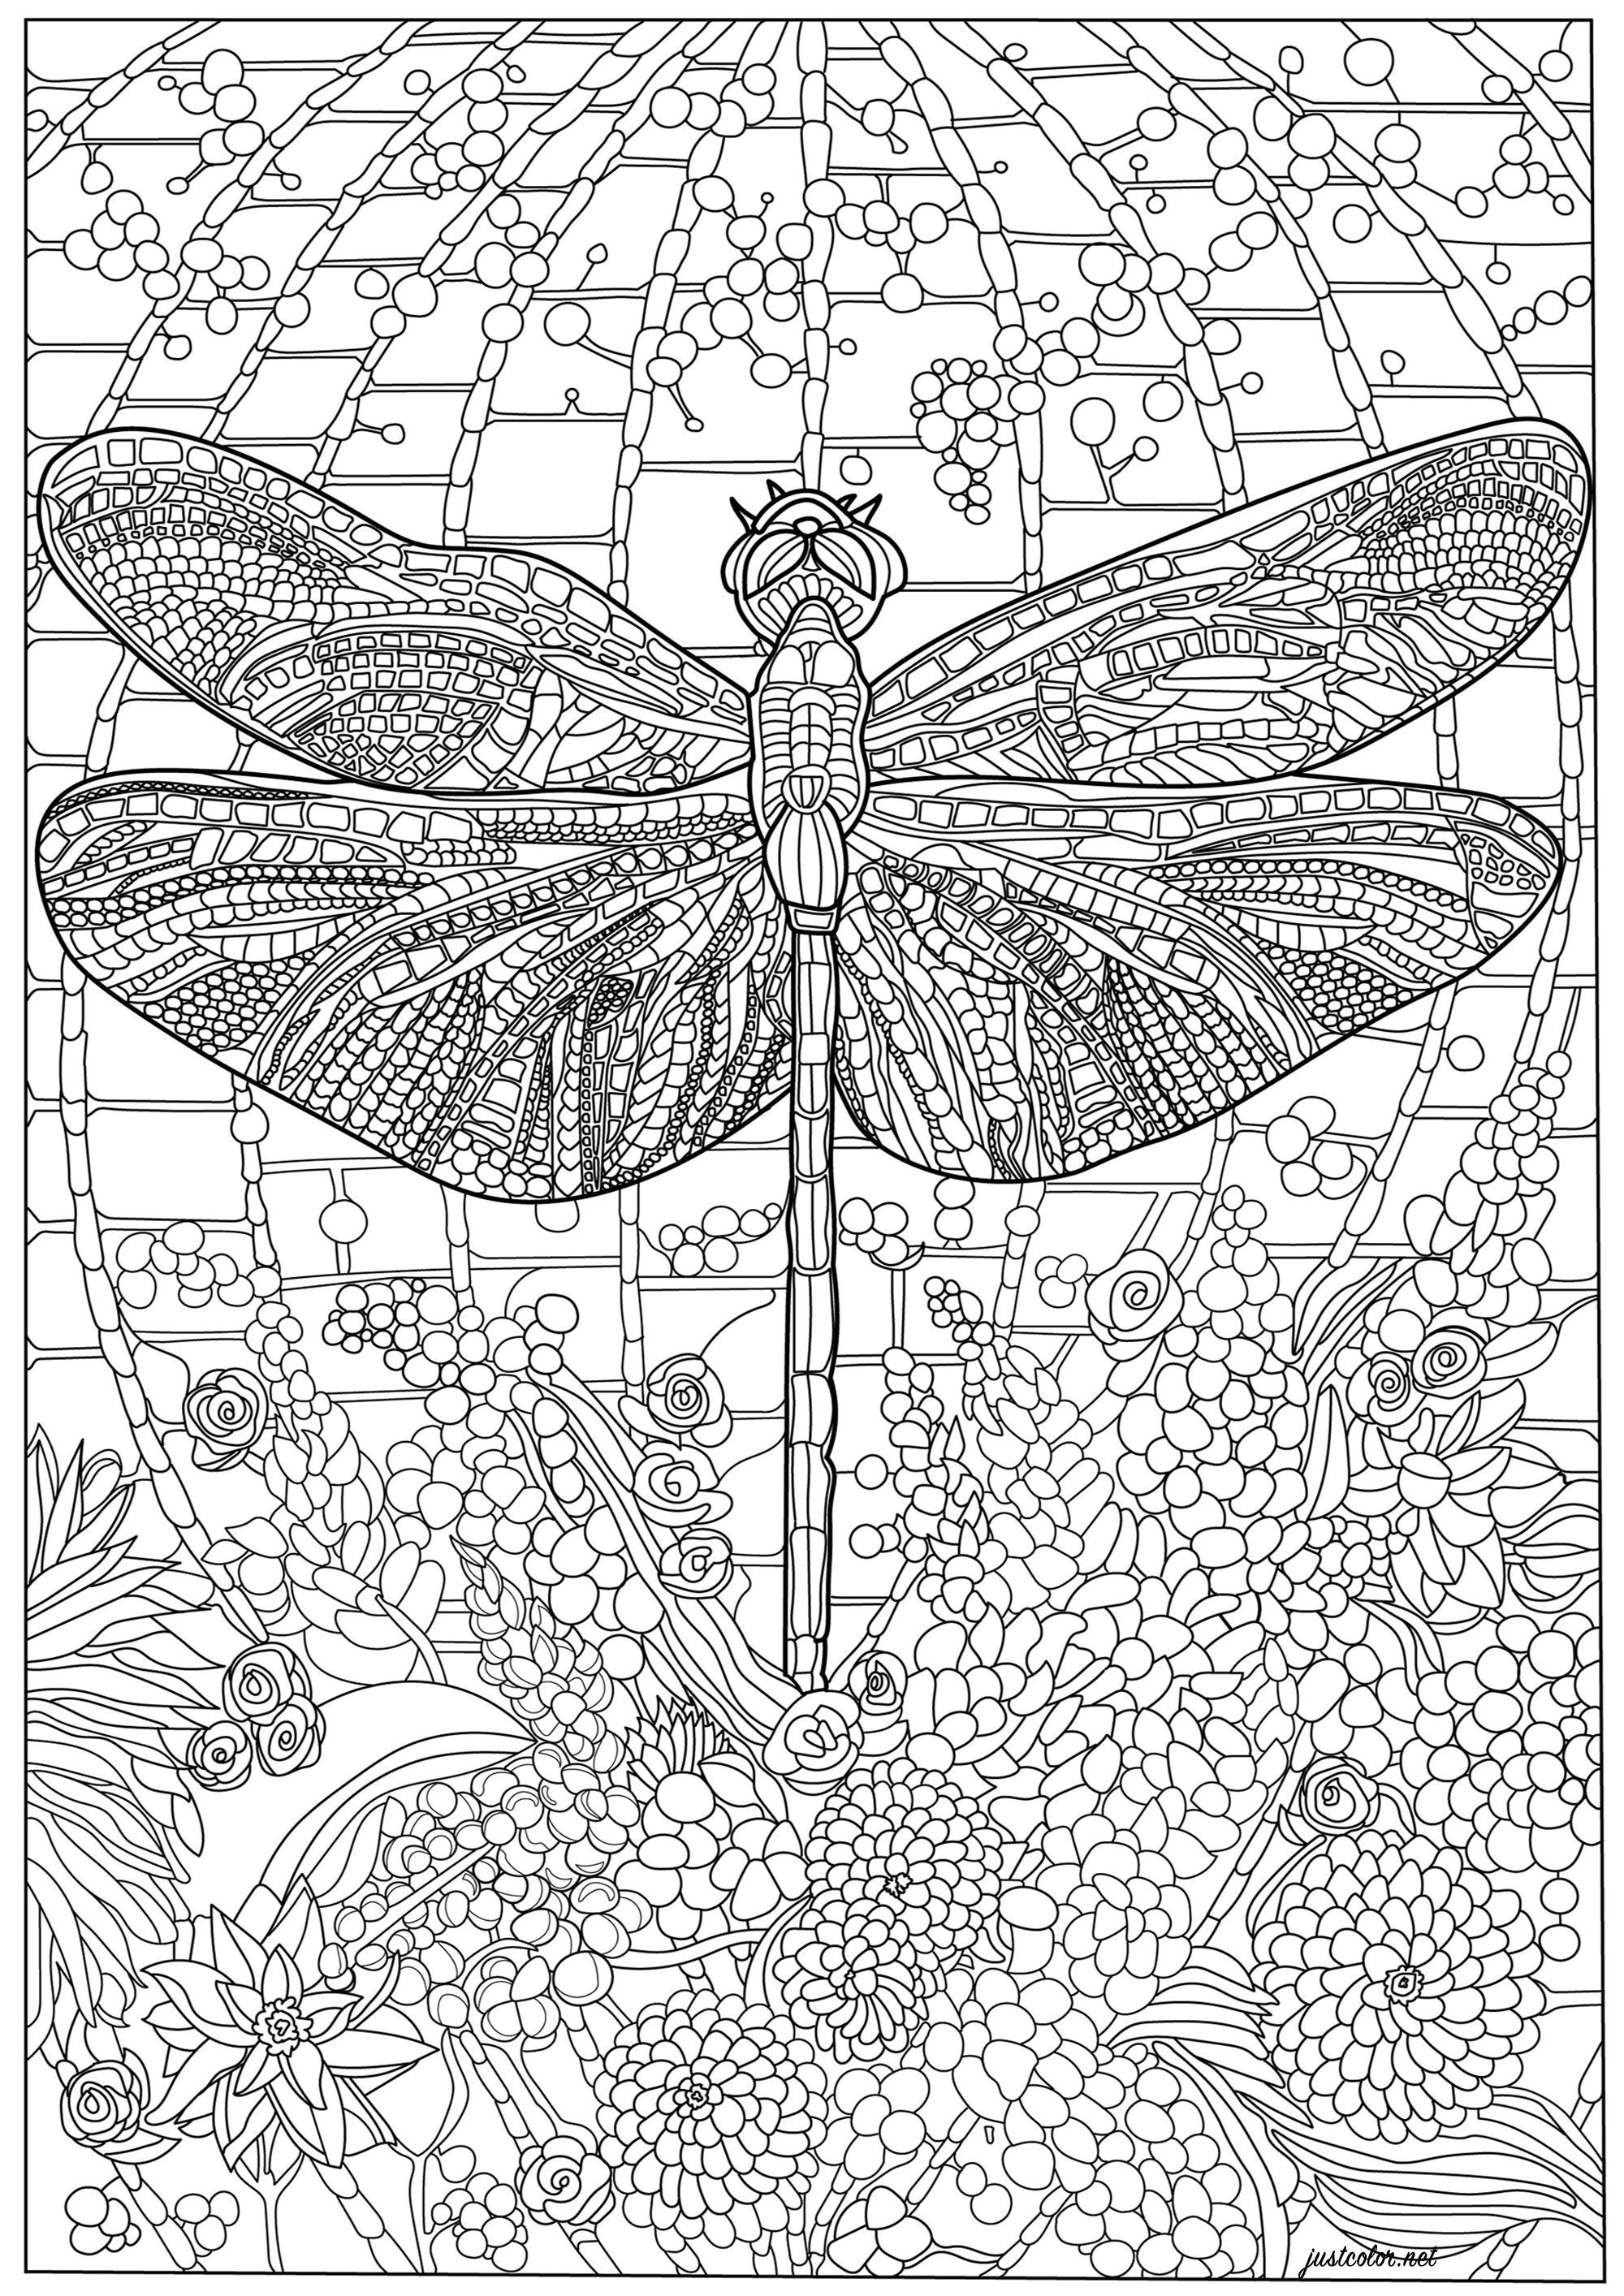 Libelle und viele komplizierte Details. Ein Farbschema voller Details, sowohl am Körper der Libelle als auch im Hintergrund, Künstler : Morgan